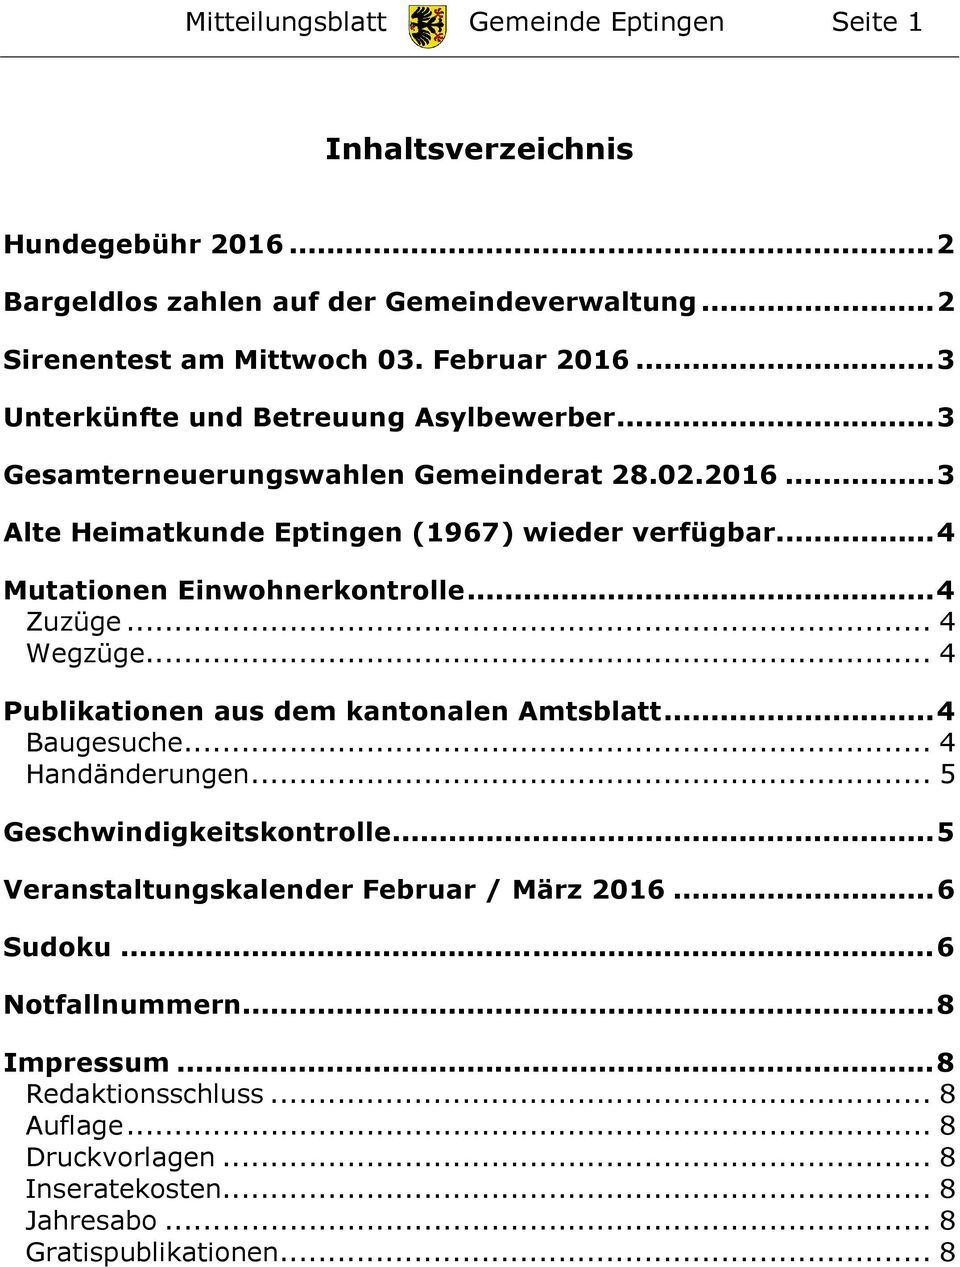 ... 4 Mutationen Einwohnerkontrolle... 4 Zuzüge... 4 Wegzüge... 4 Publikationen aus dem kantonalen Amtsblatt... 4 Baugesuche... 4 Handänderungen... 5 Geschwindigkeitskontrolle.